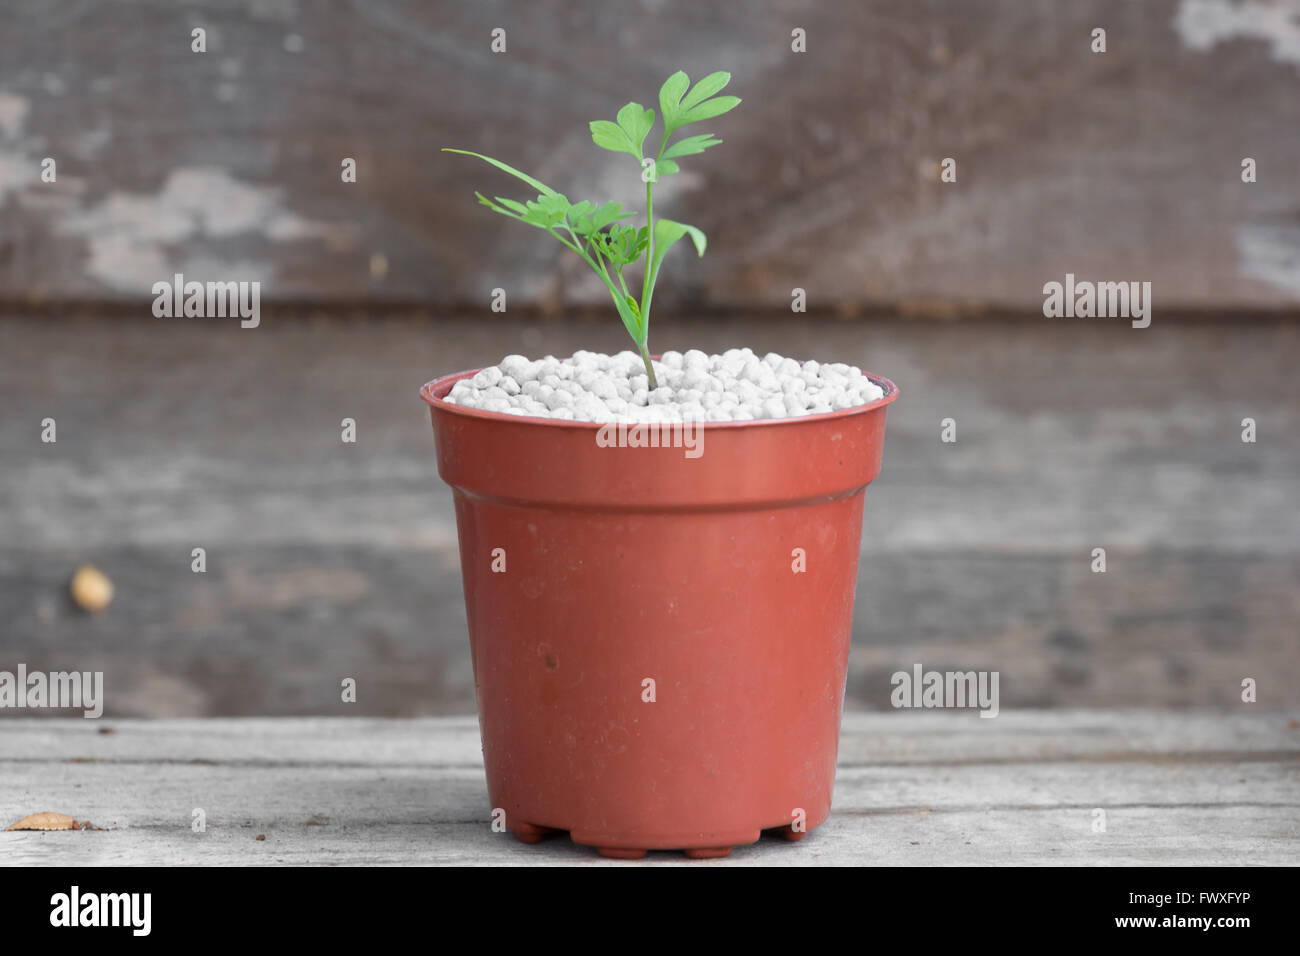 Seedling growing from fertiliser, a potential advertisement for nitrate fertiliser specifically NPK fertiliser Stock Photo